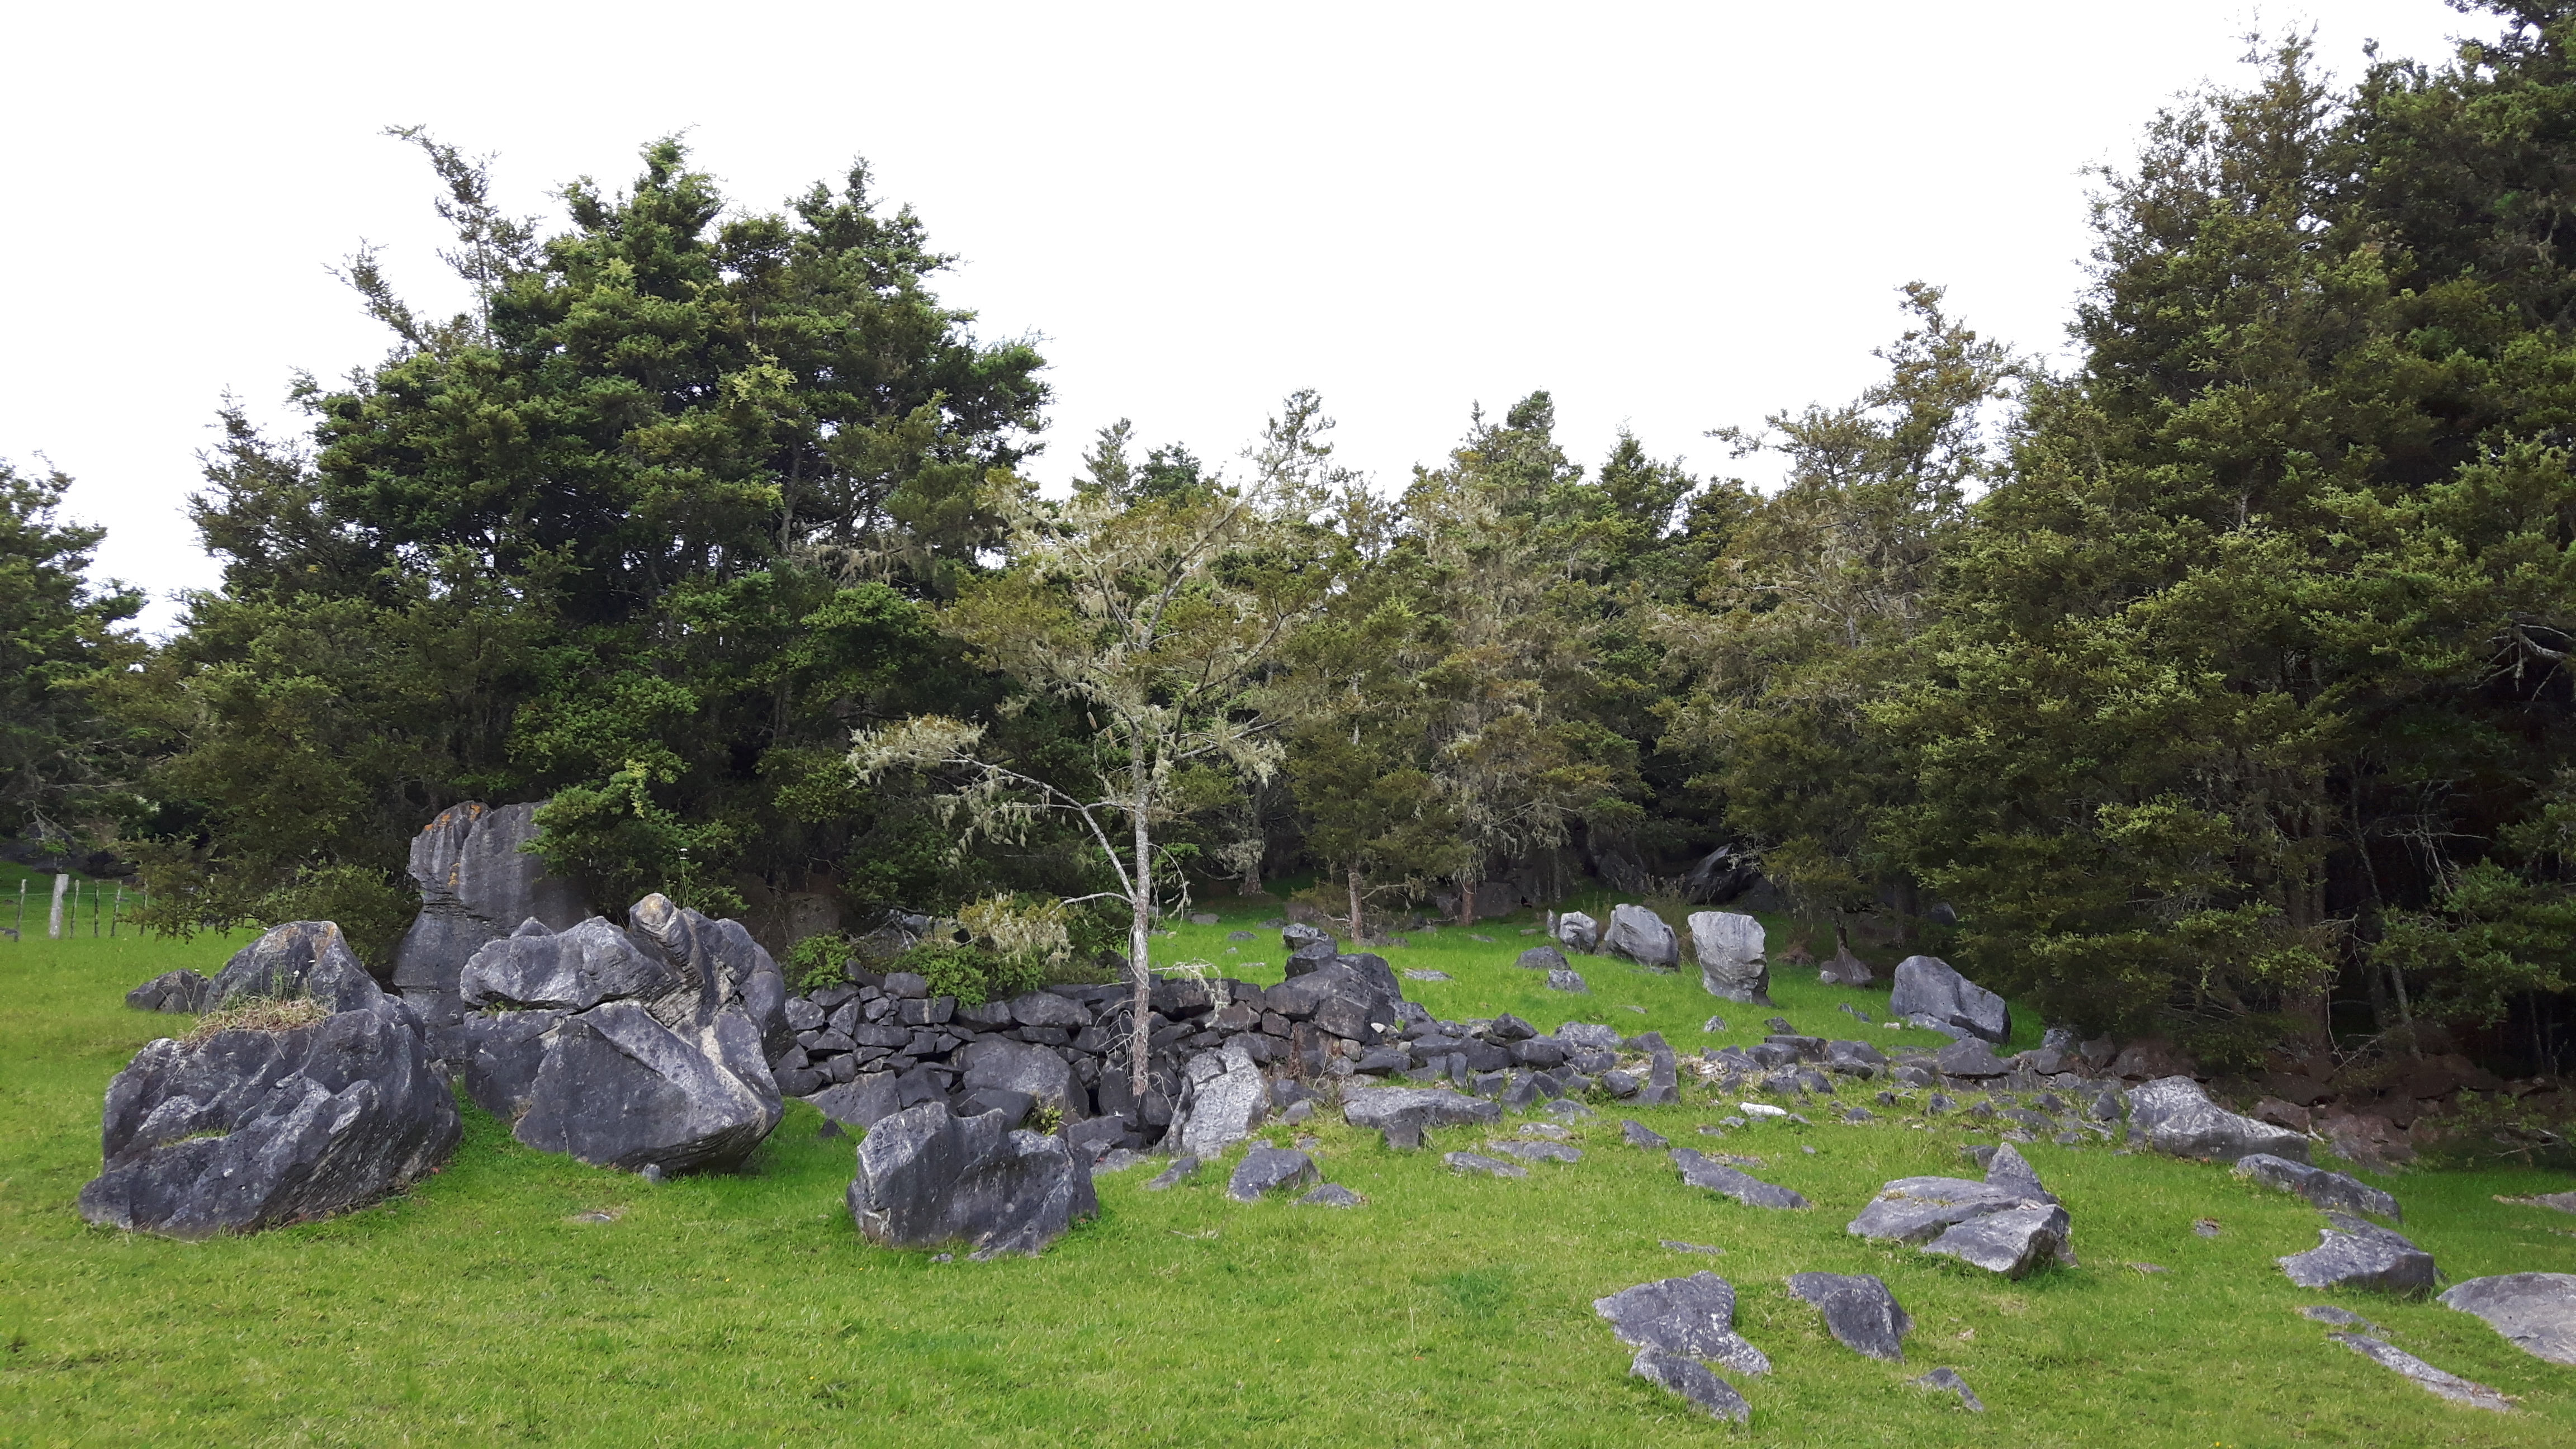 Whangarei stone remains